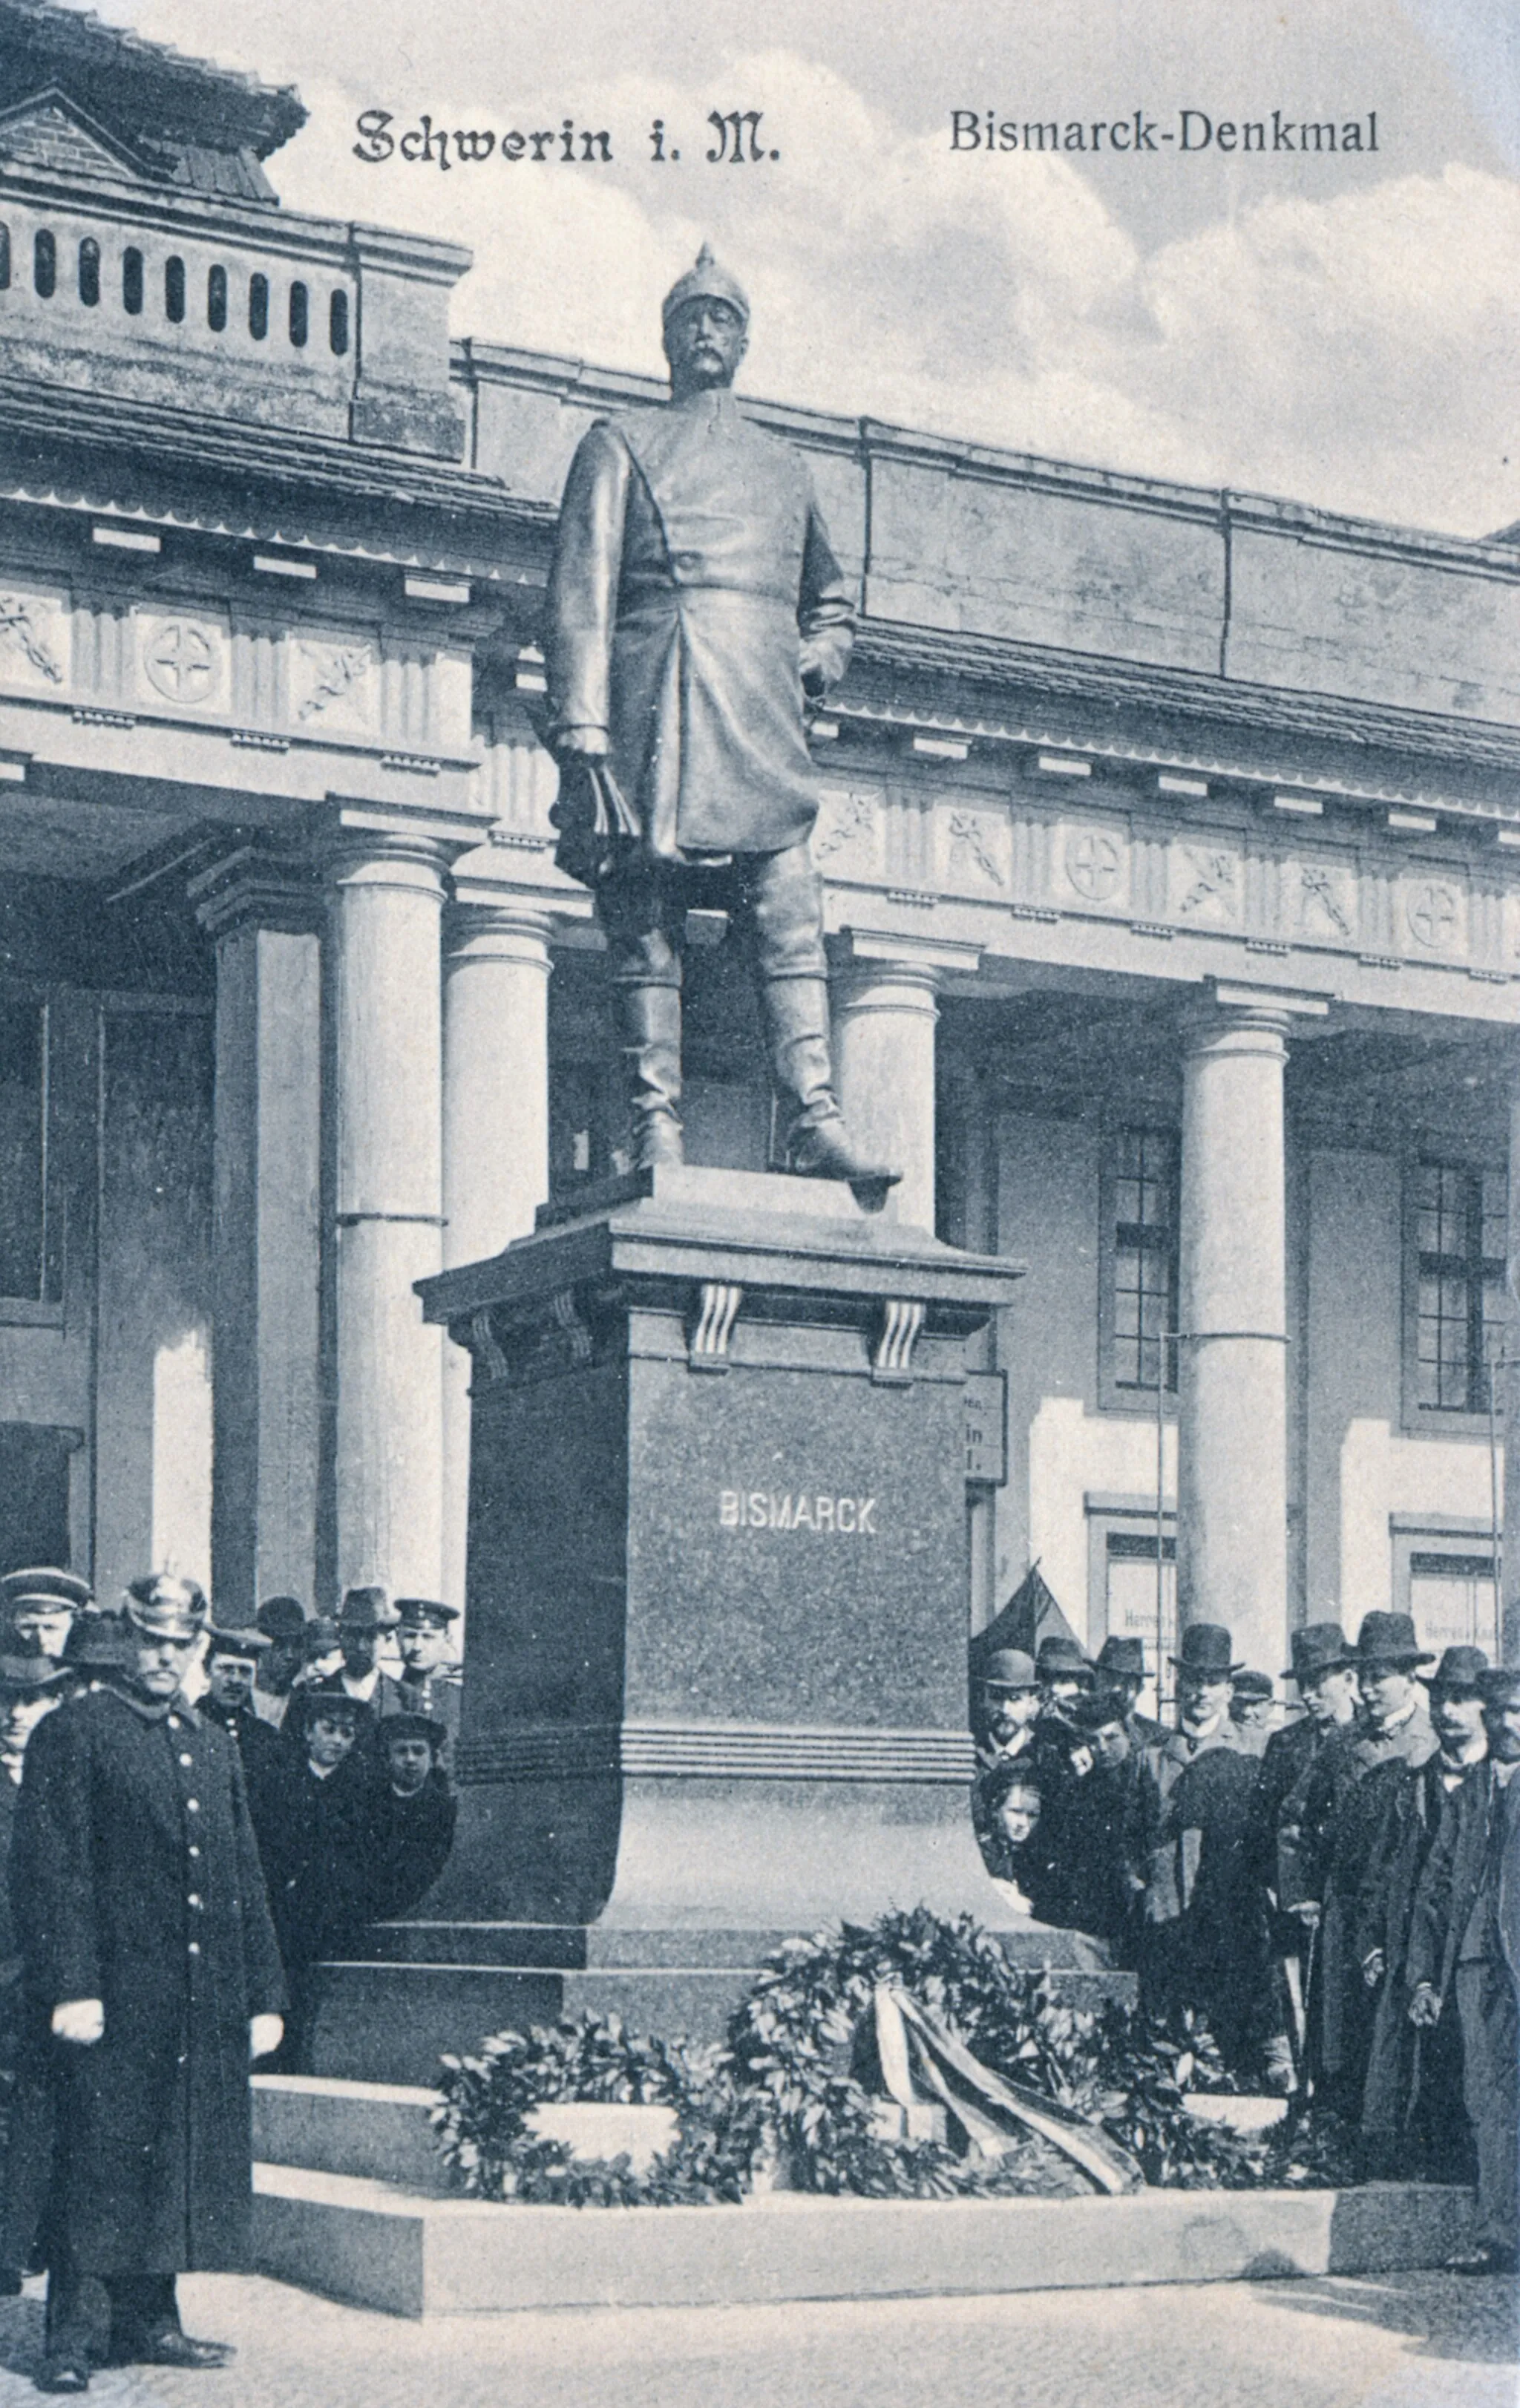 Photo showing: Bismarck-Denkmal in Schwerin